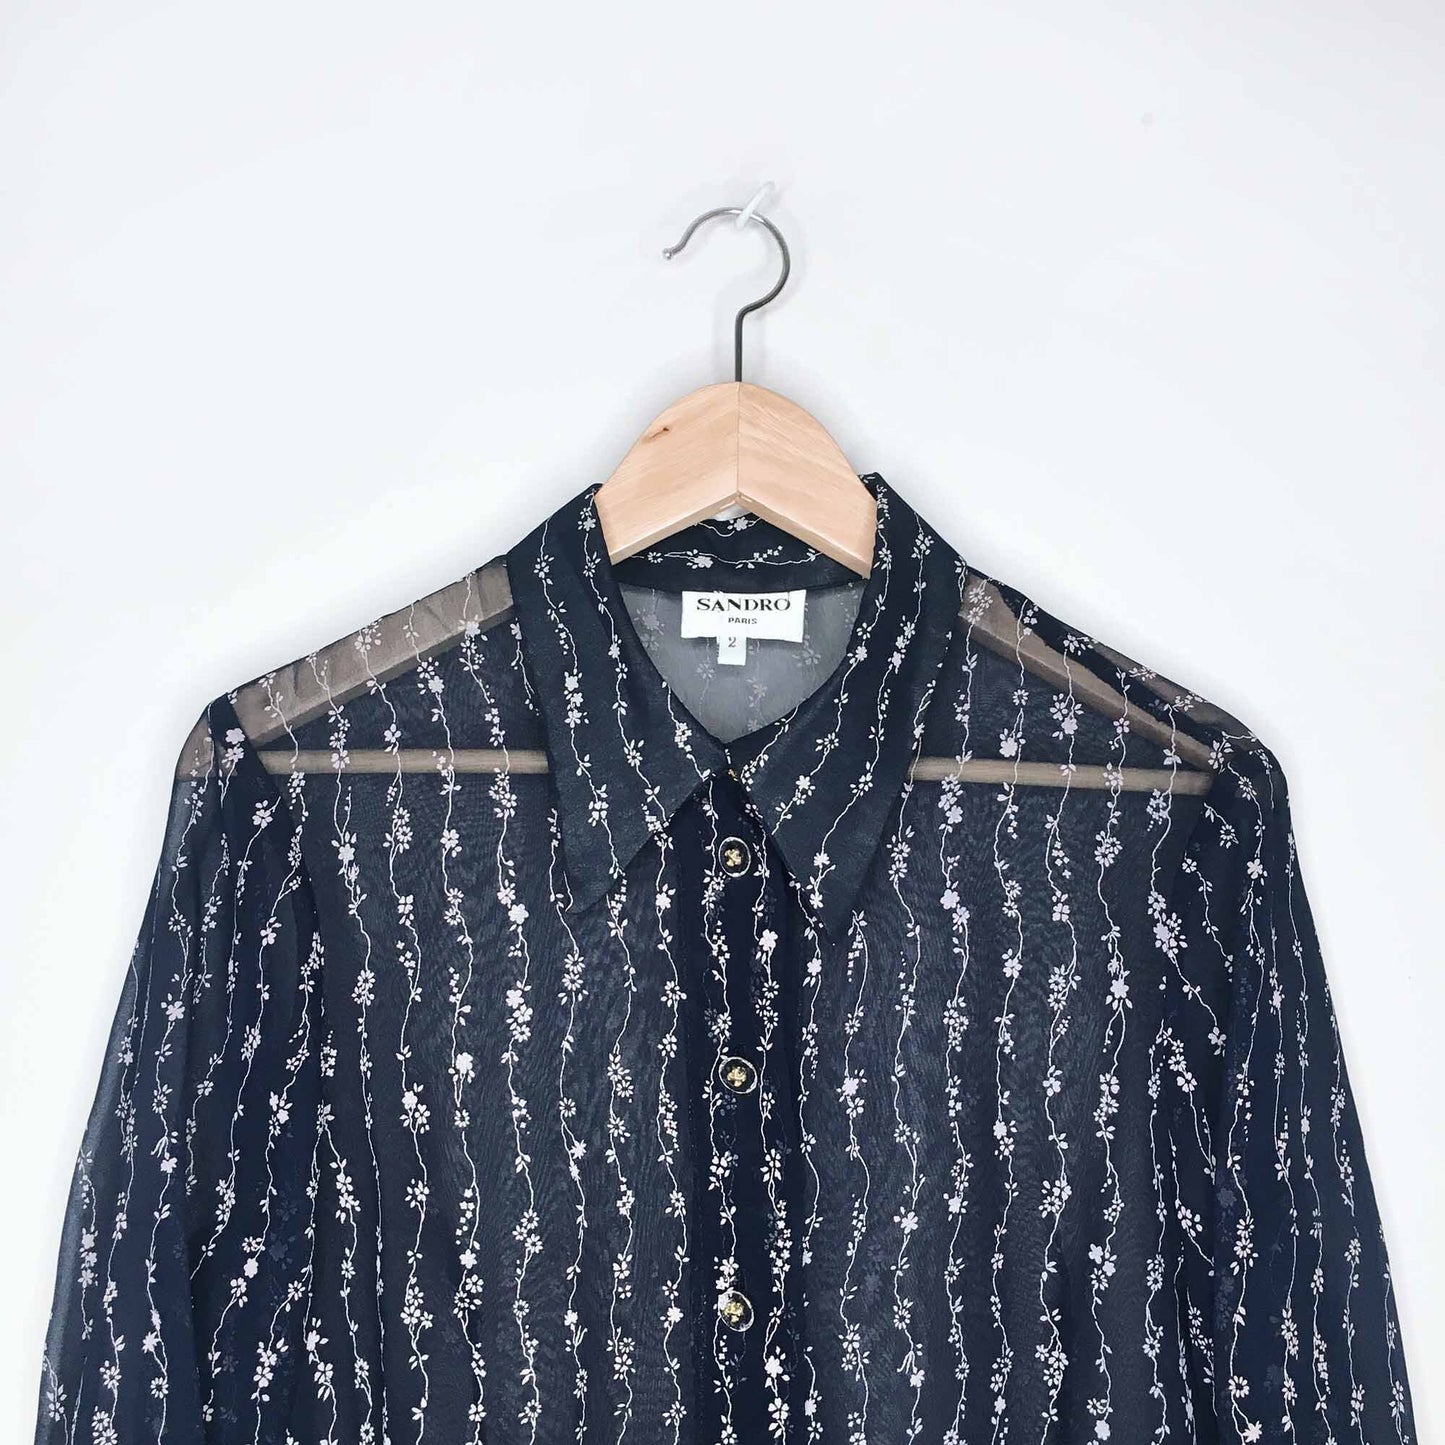 Vintage 70's Sandro Paris button down blouse - size 2